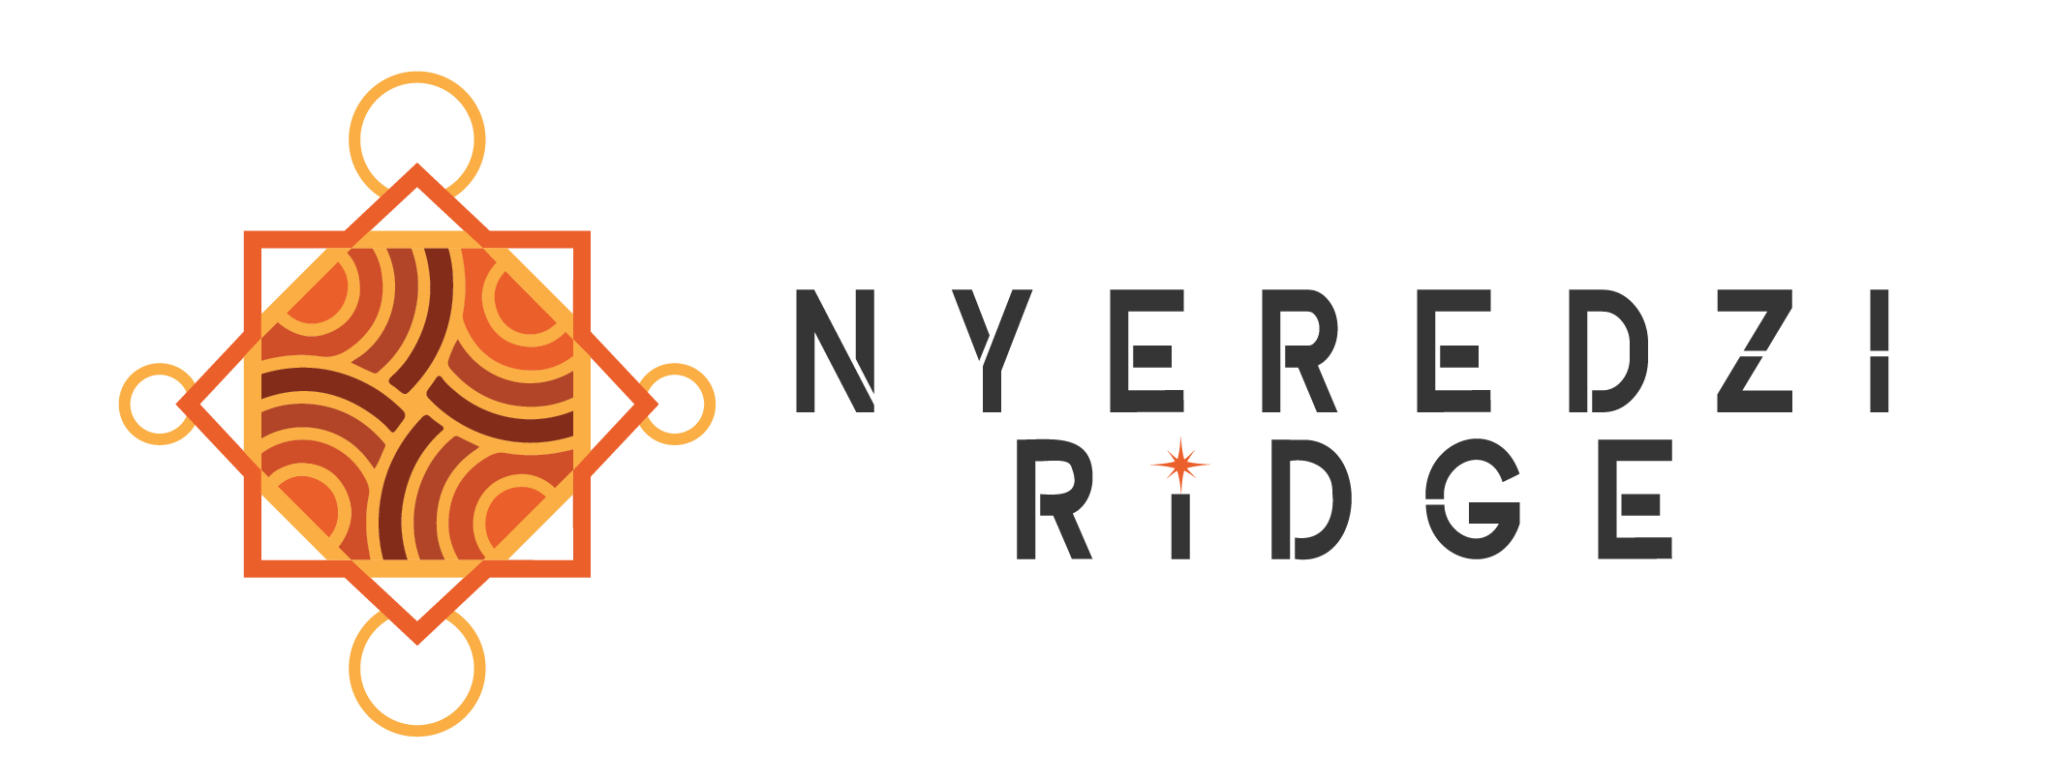 nyeredzi ridge full logo